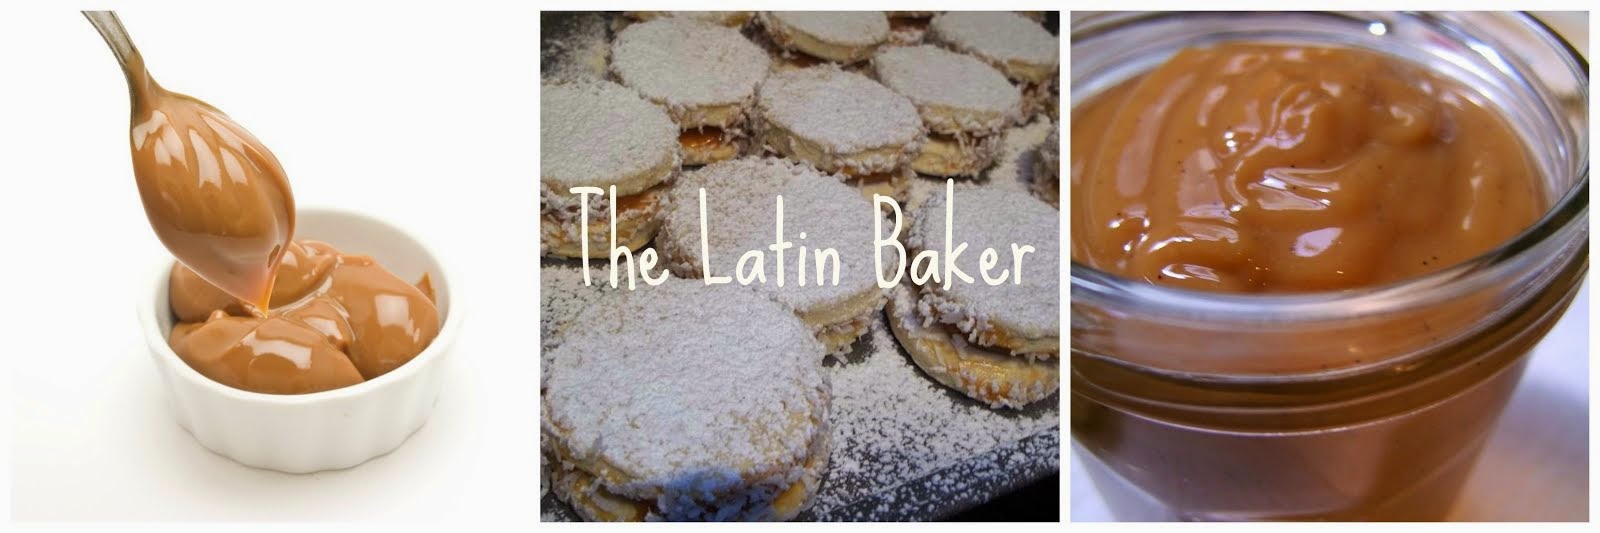 The Latin Baker